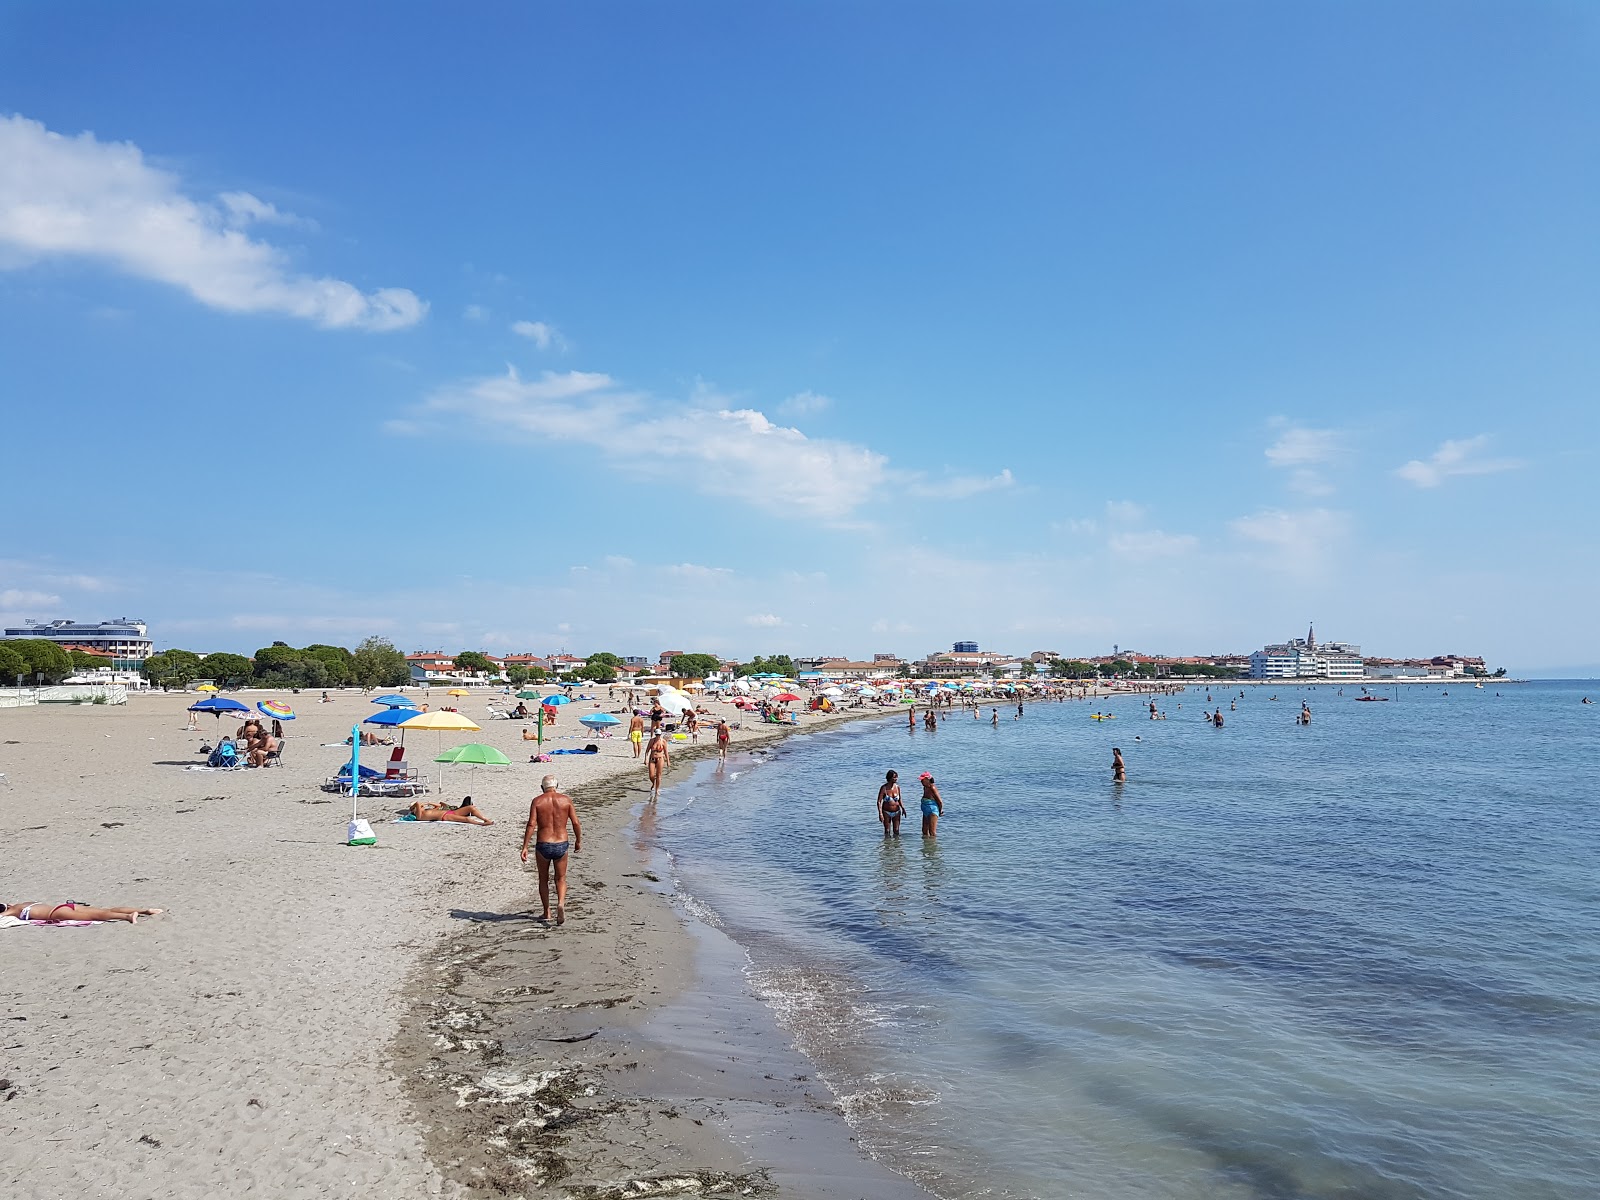 Zdjęcie Spiaggia Costa Azzurra obszar kurortu nadmorskiego